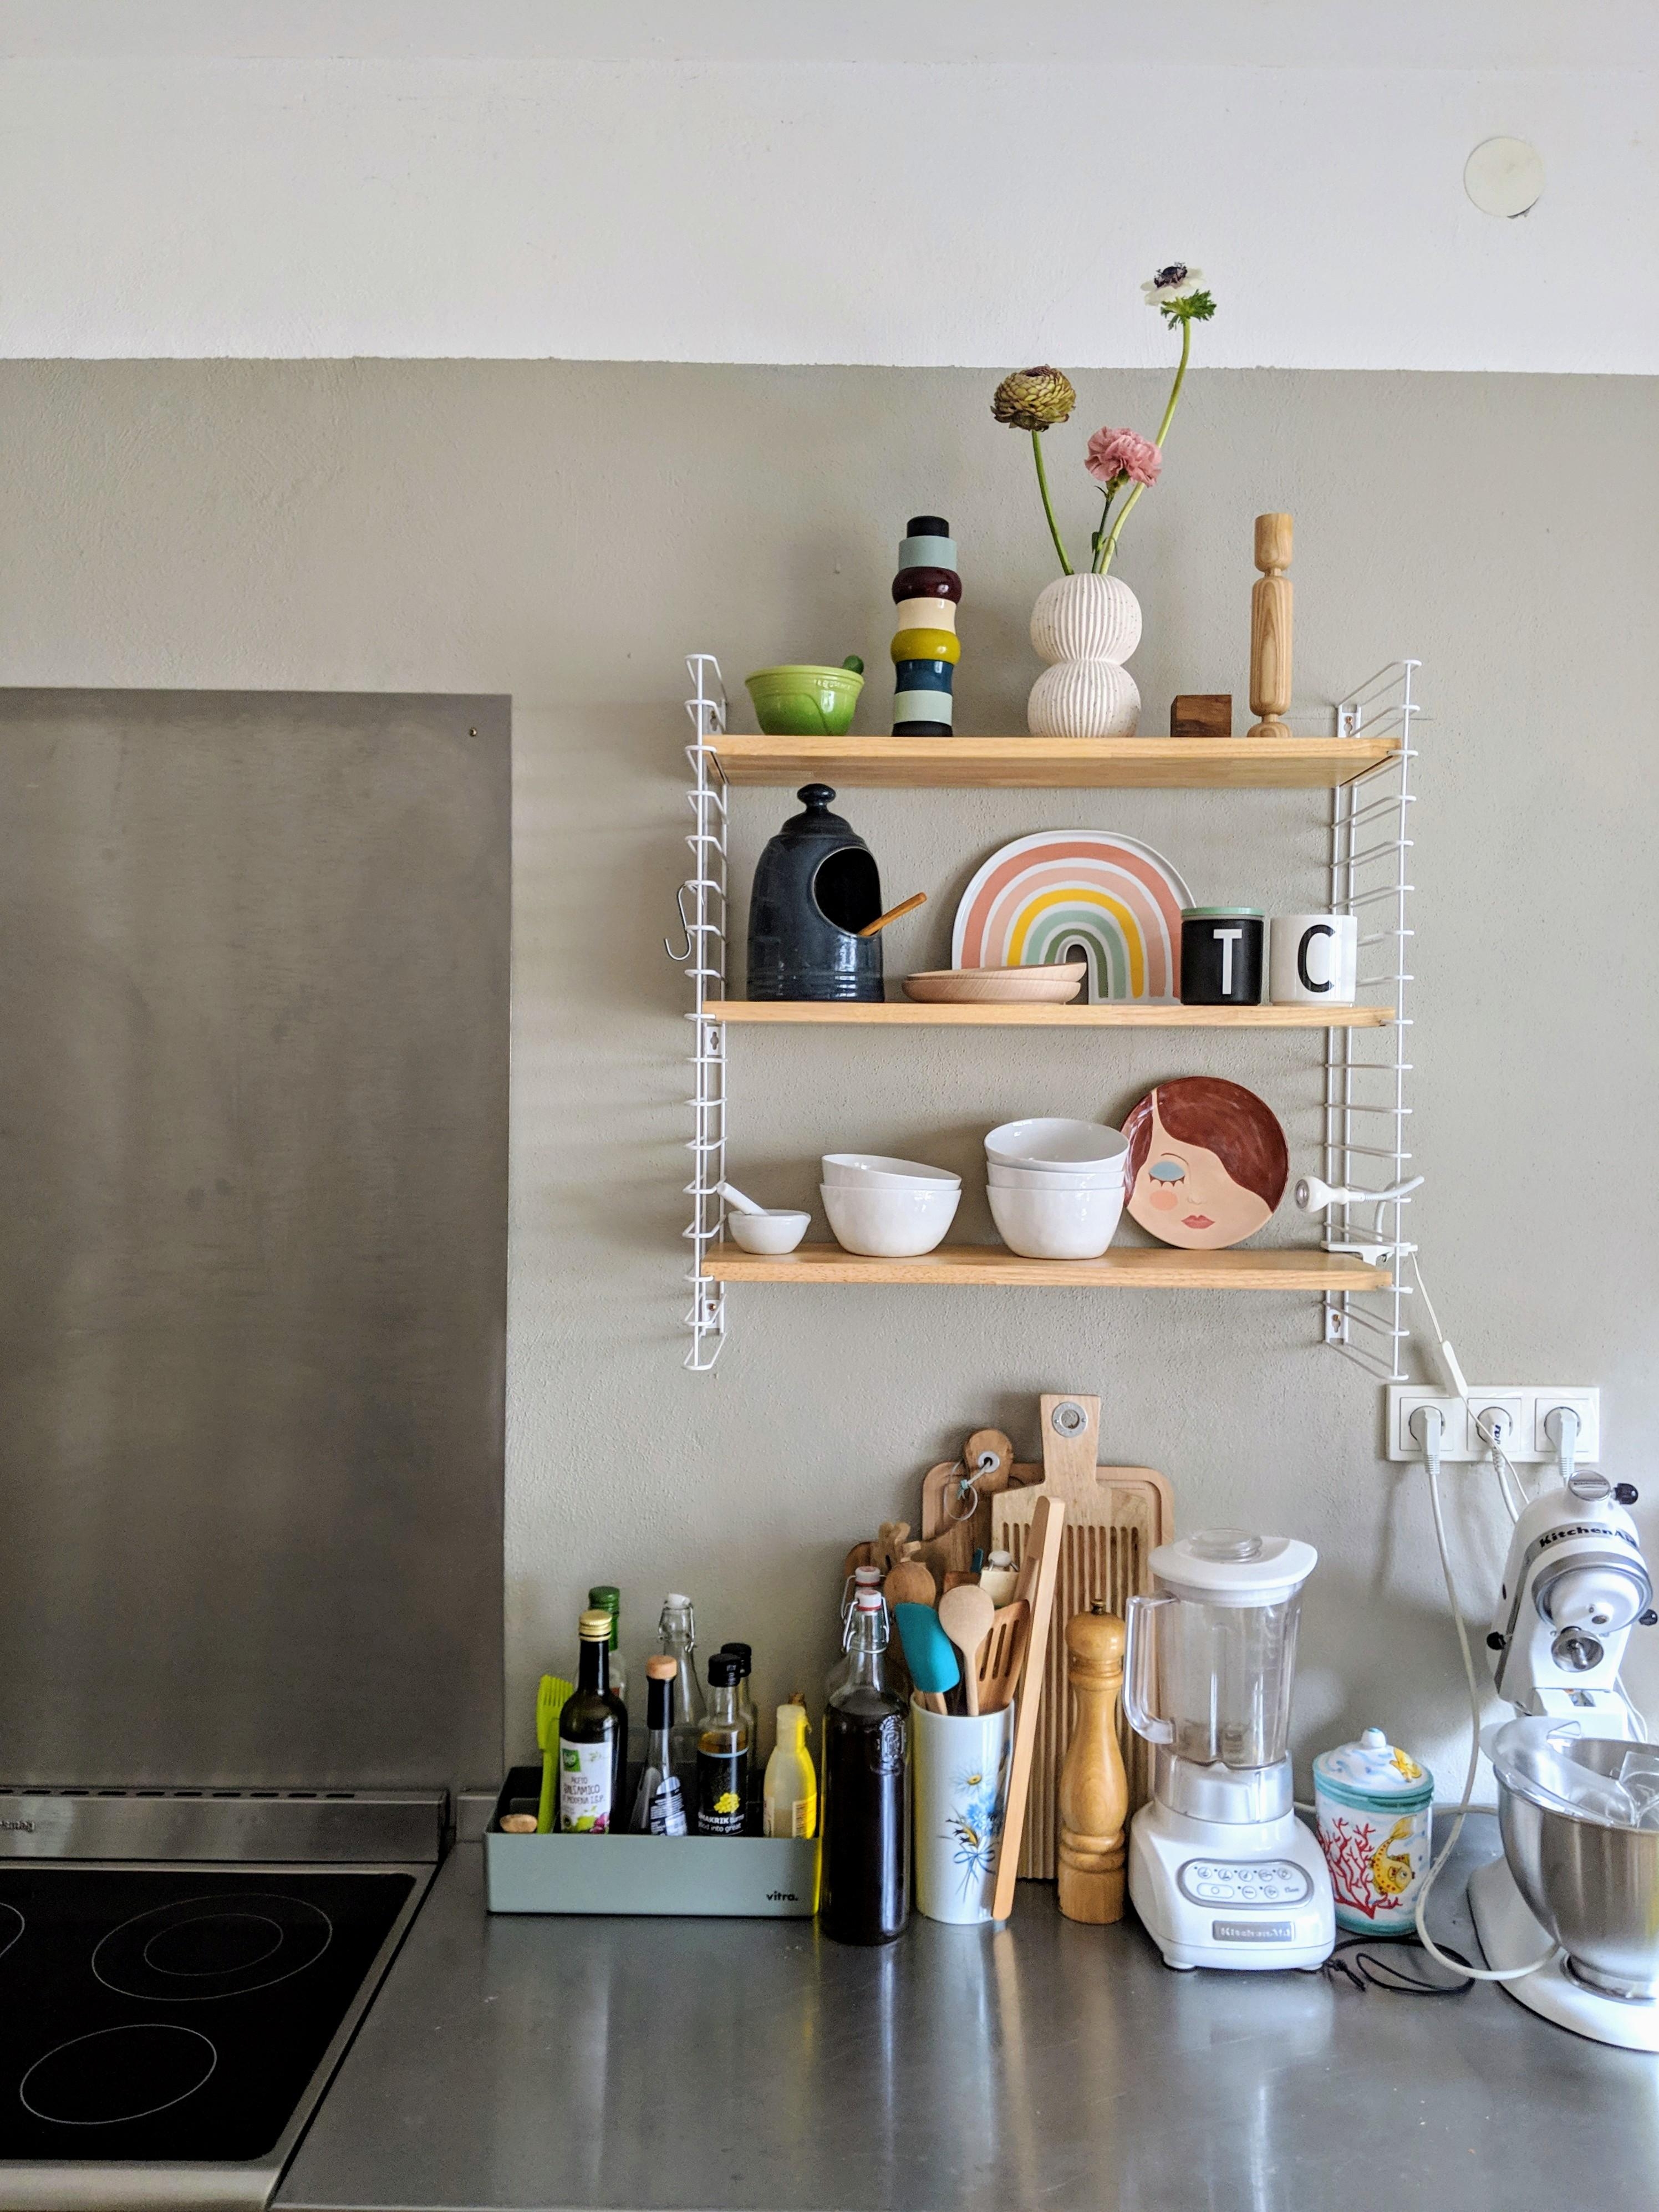 Willkommen in meiner #küche ein kleiner Einblick☀️#home #kücheneinrichtung #interior #skandinavisch #livingchallenge